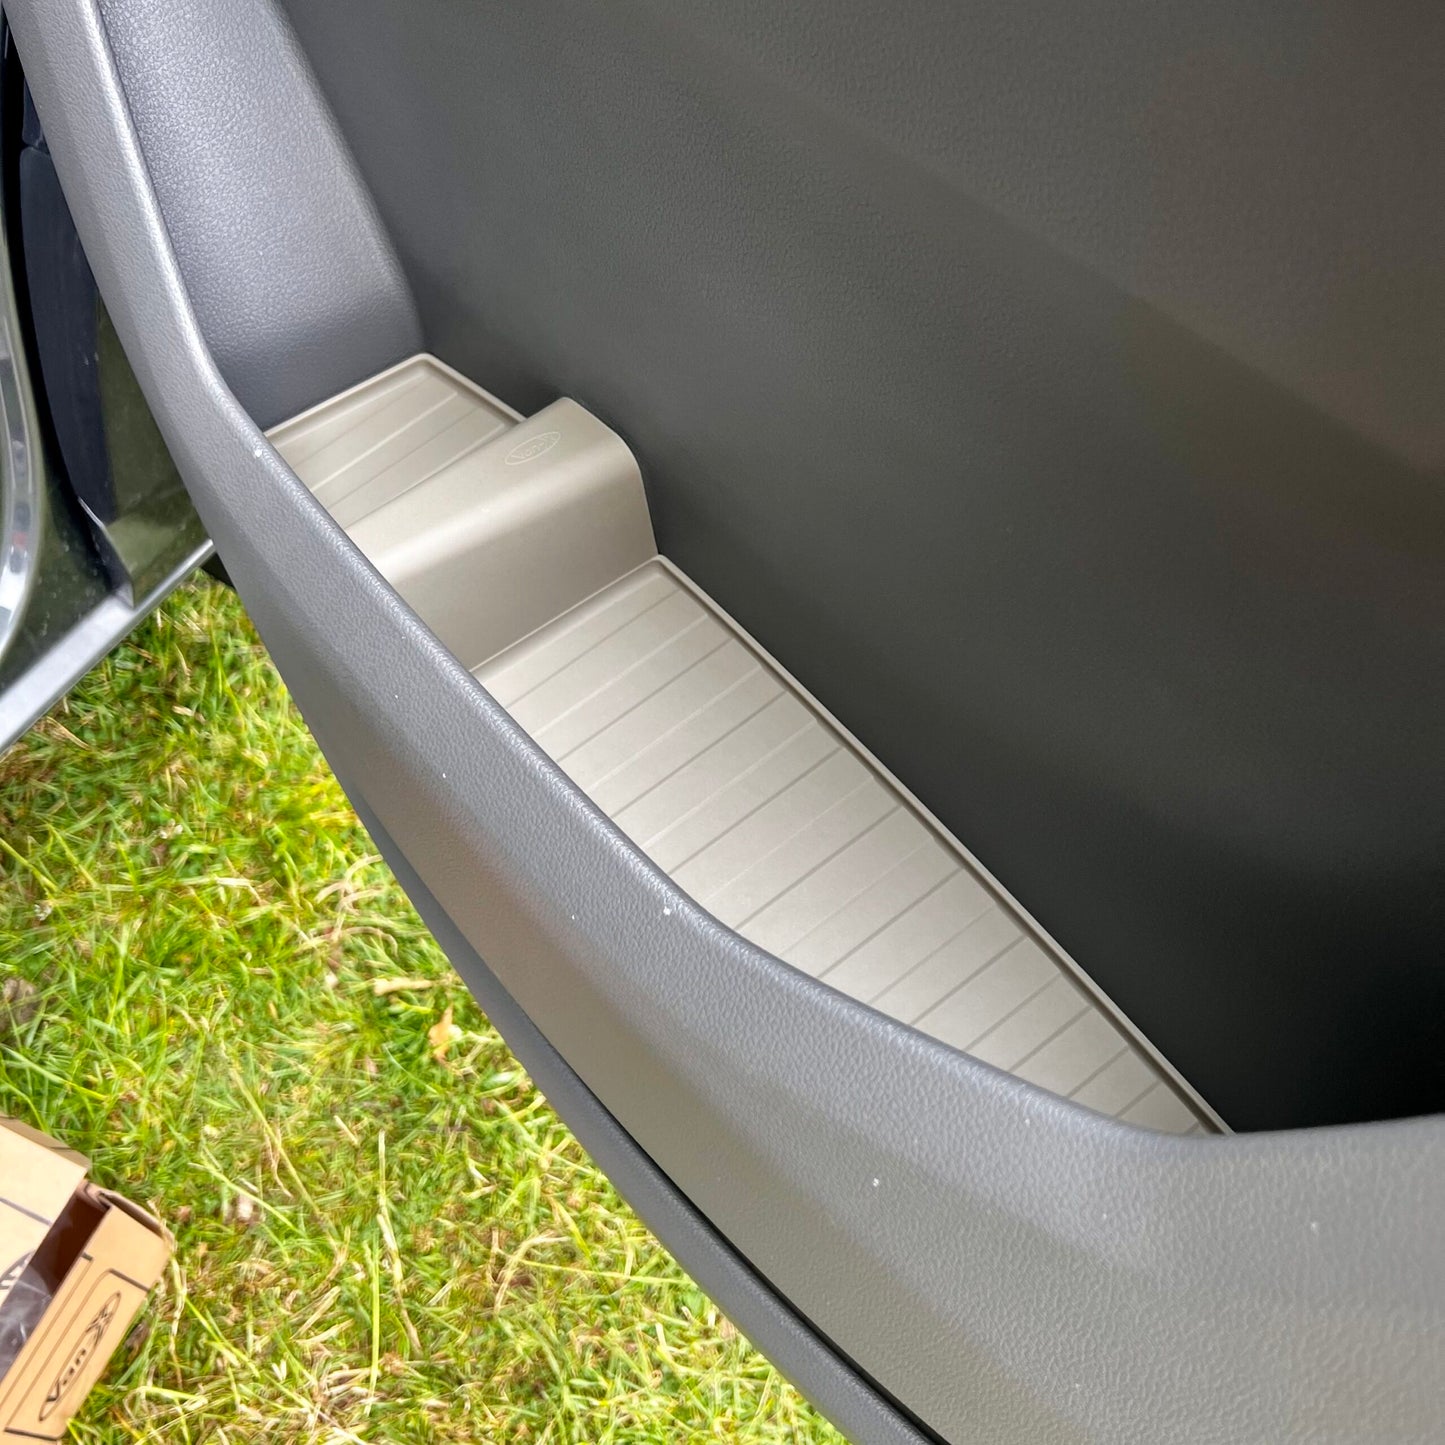 VW Crafter nieuwe vorm rubberen deurvoeringzakinzetstukken grijs